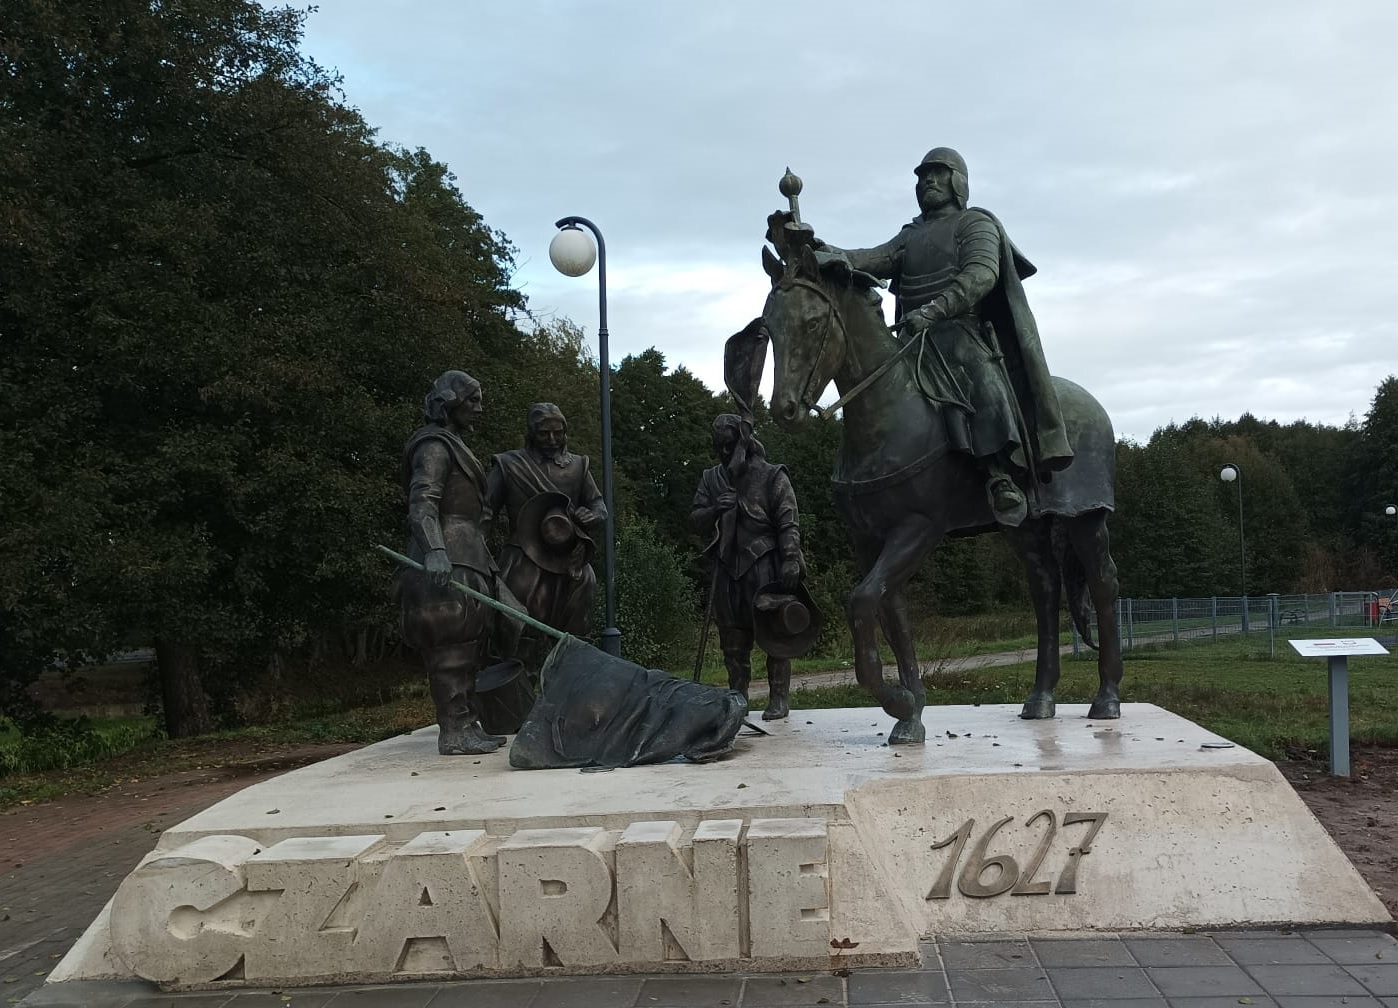 Pomnik upamiętniający chwałę oręża polskiego w bitwie pod Czarnem w 1627 roku odsłonięty